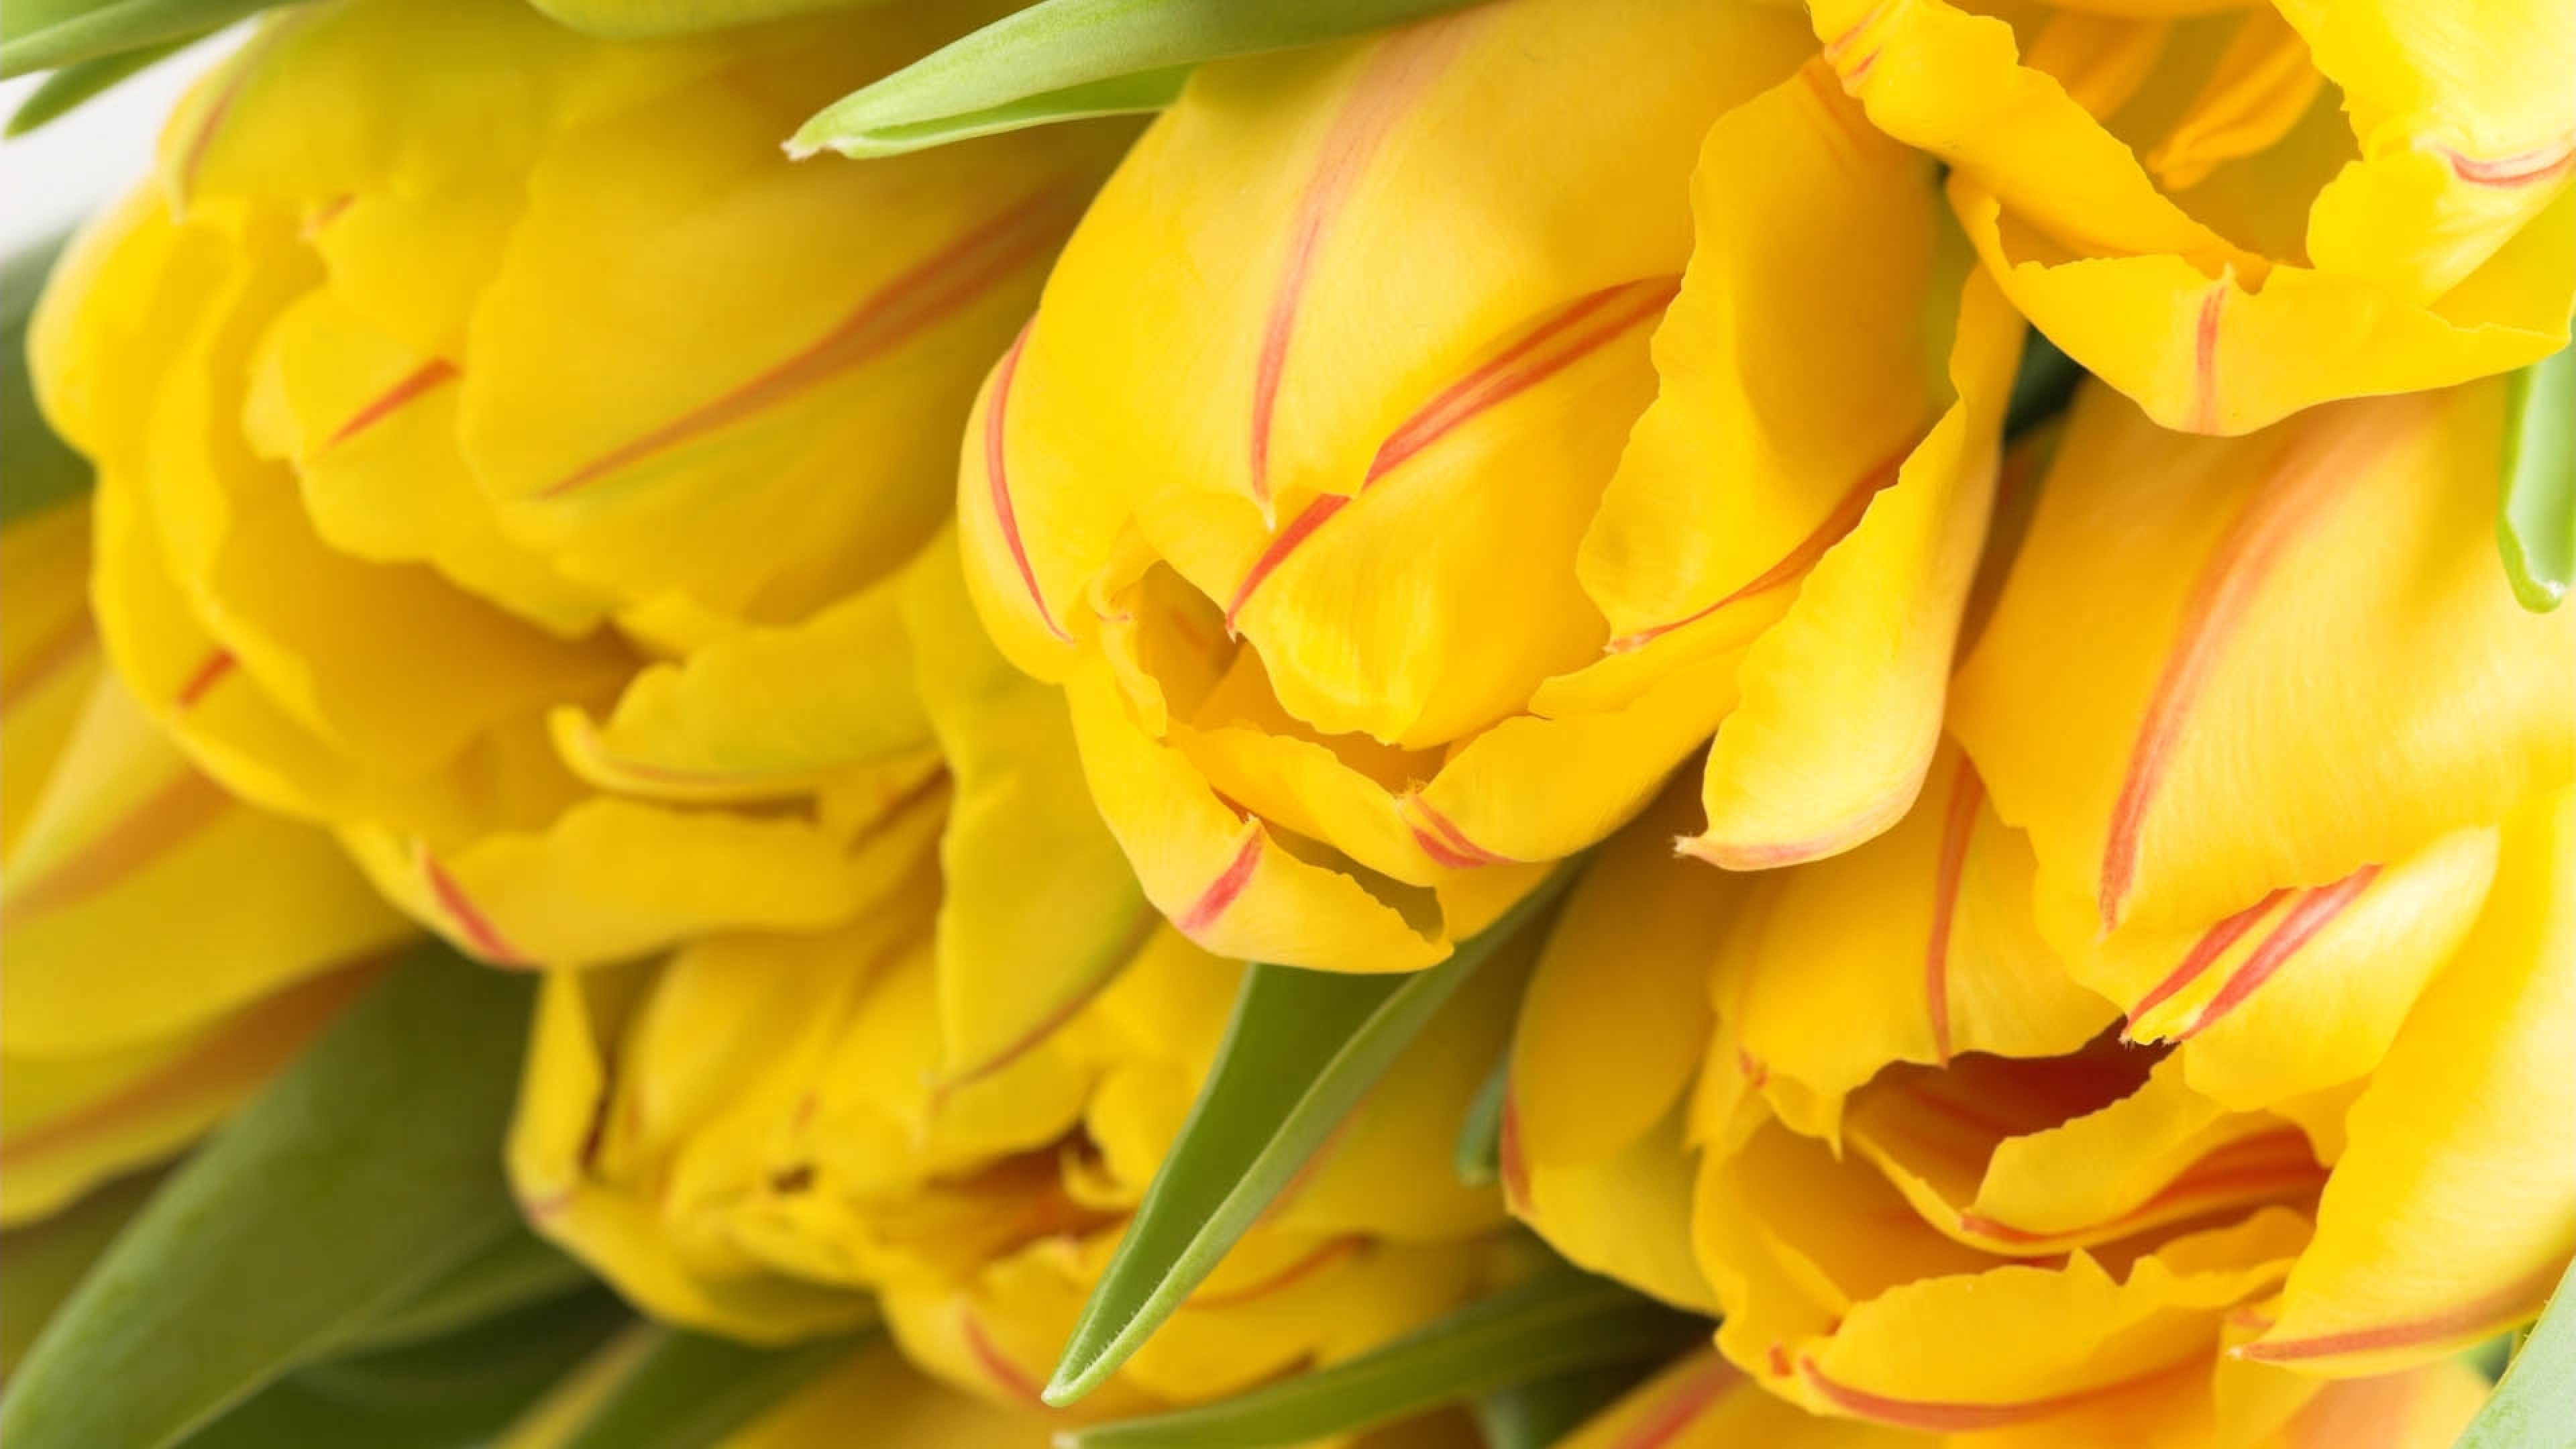 Обои с тюльпанами на телефон. Йеллоу Флауэр. Желтые полумахровые тюльпаны. Желтые тюльпаны. Жёлтый цветок.